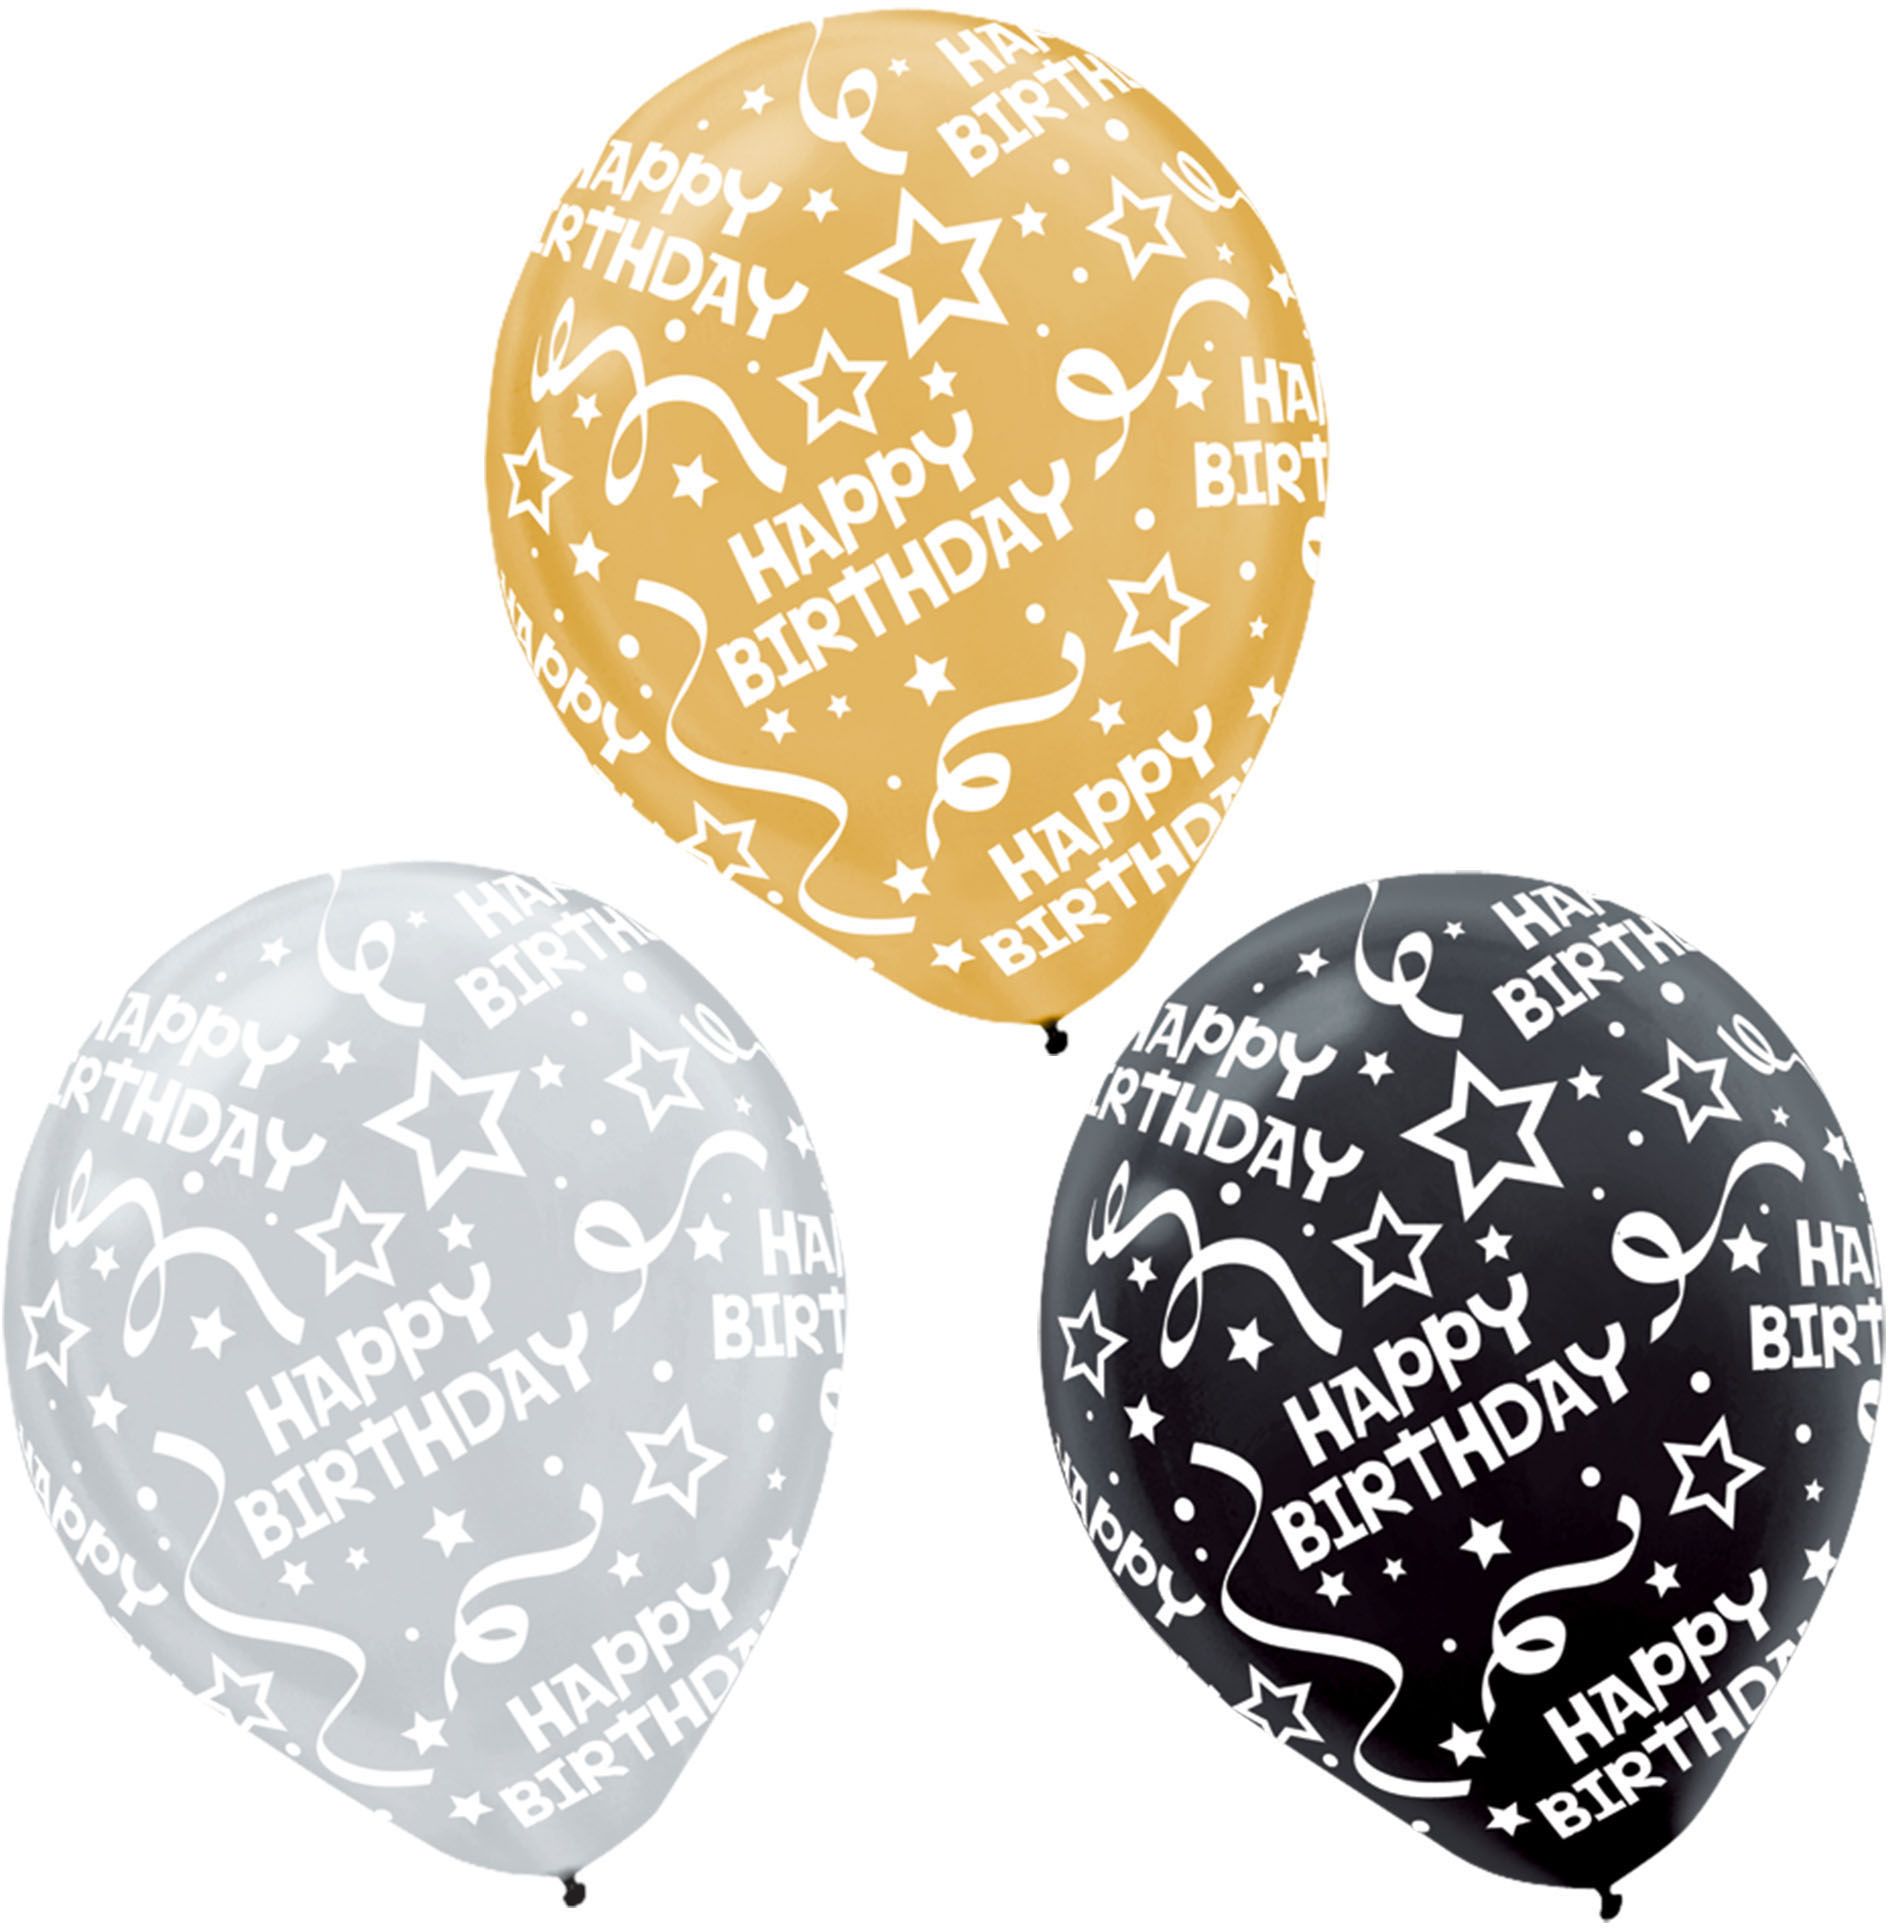 Ballons Dorés, Paquet De 30 Ballons Dorés Métalliques En Latex 12 Pouces  30,5 Cm